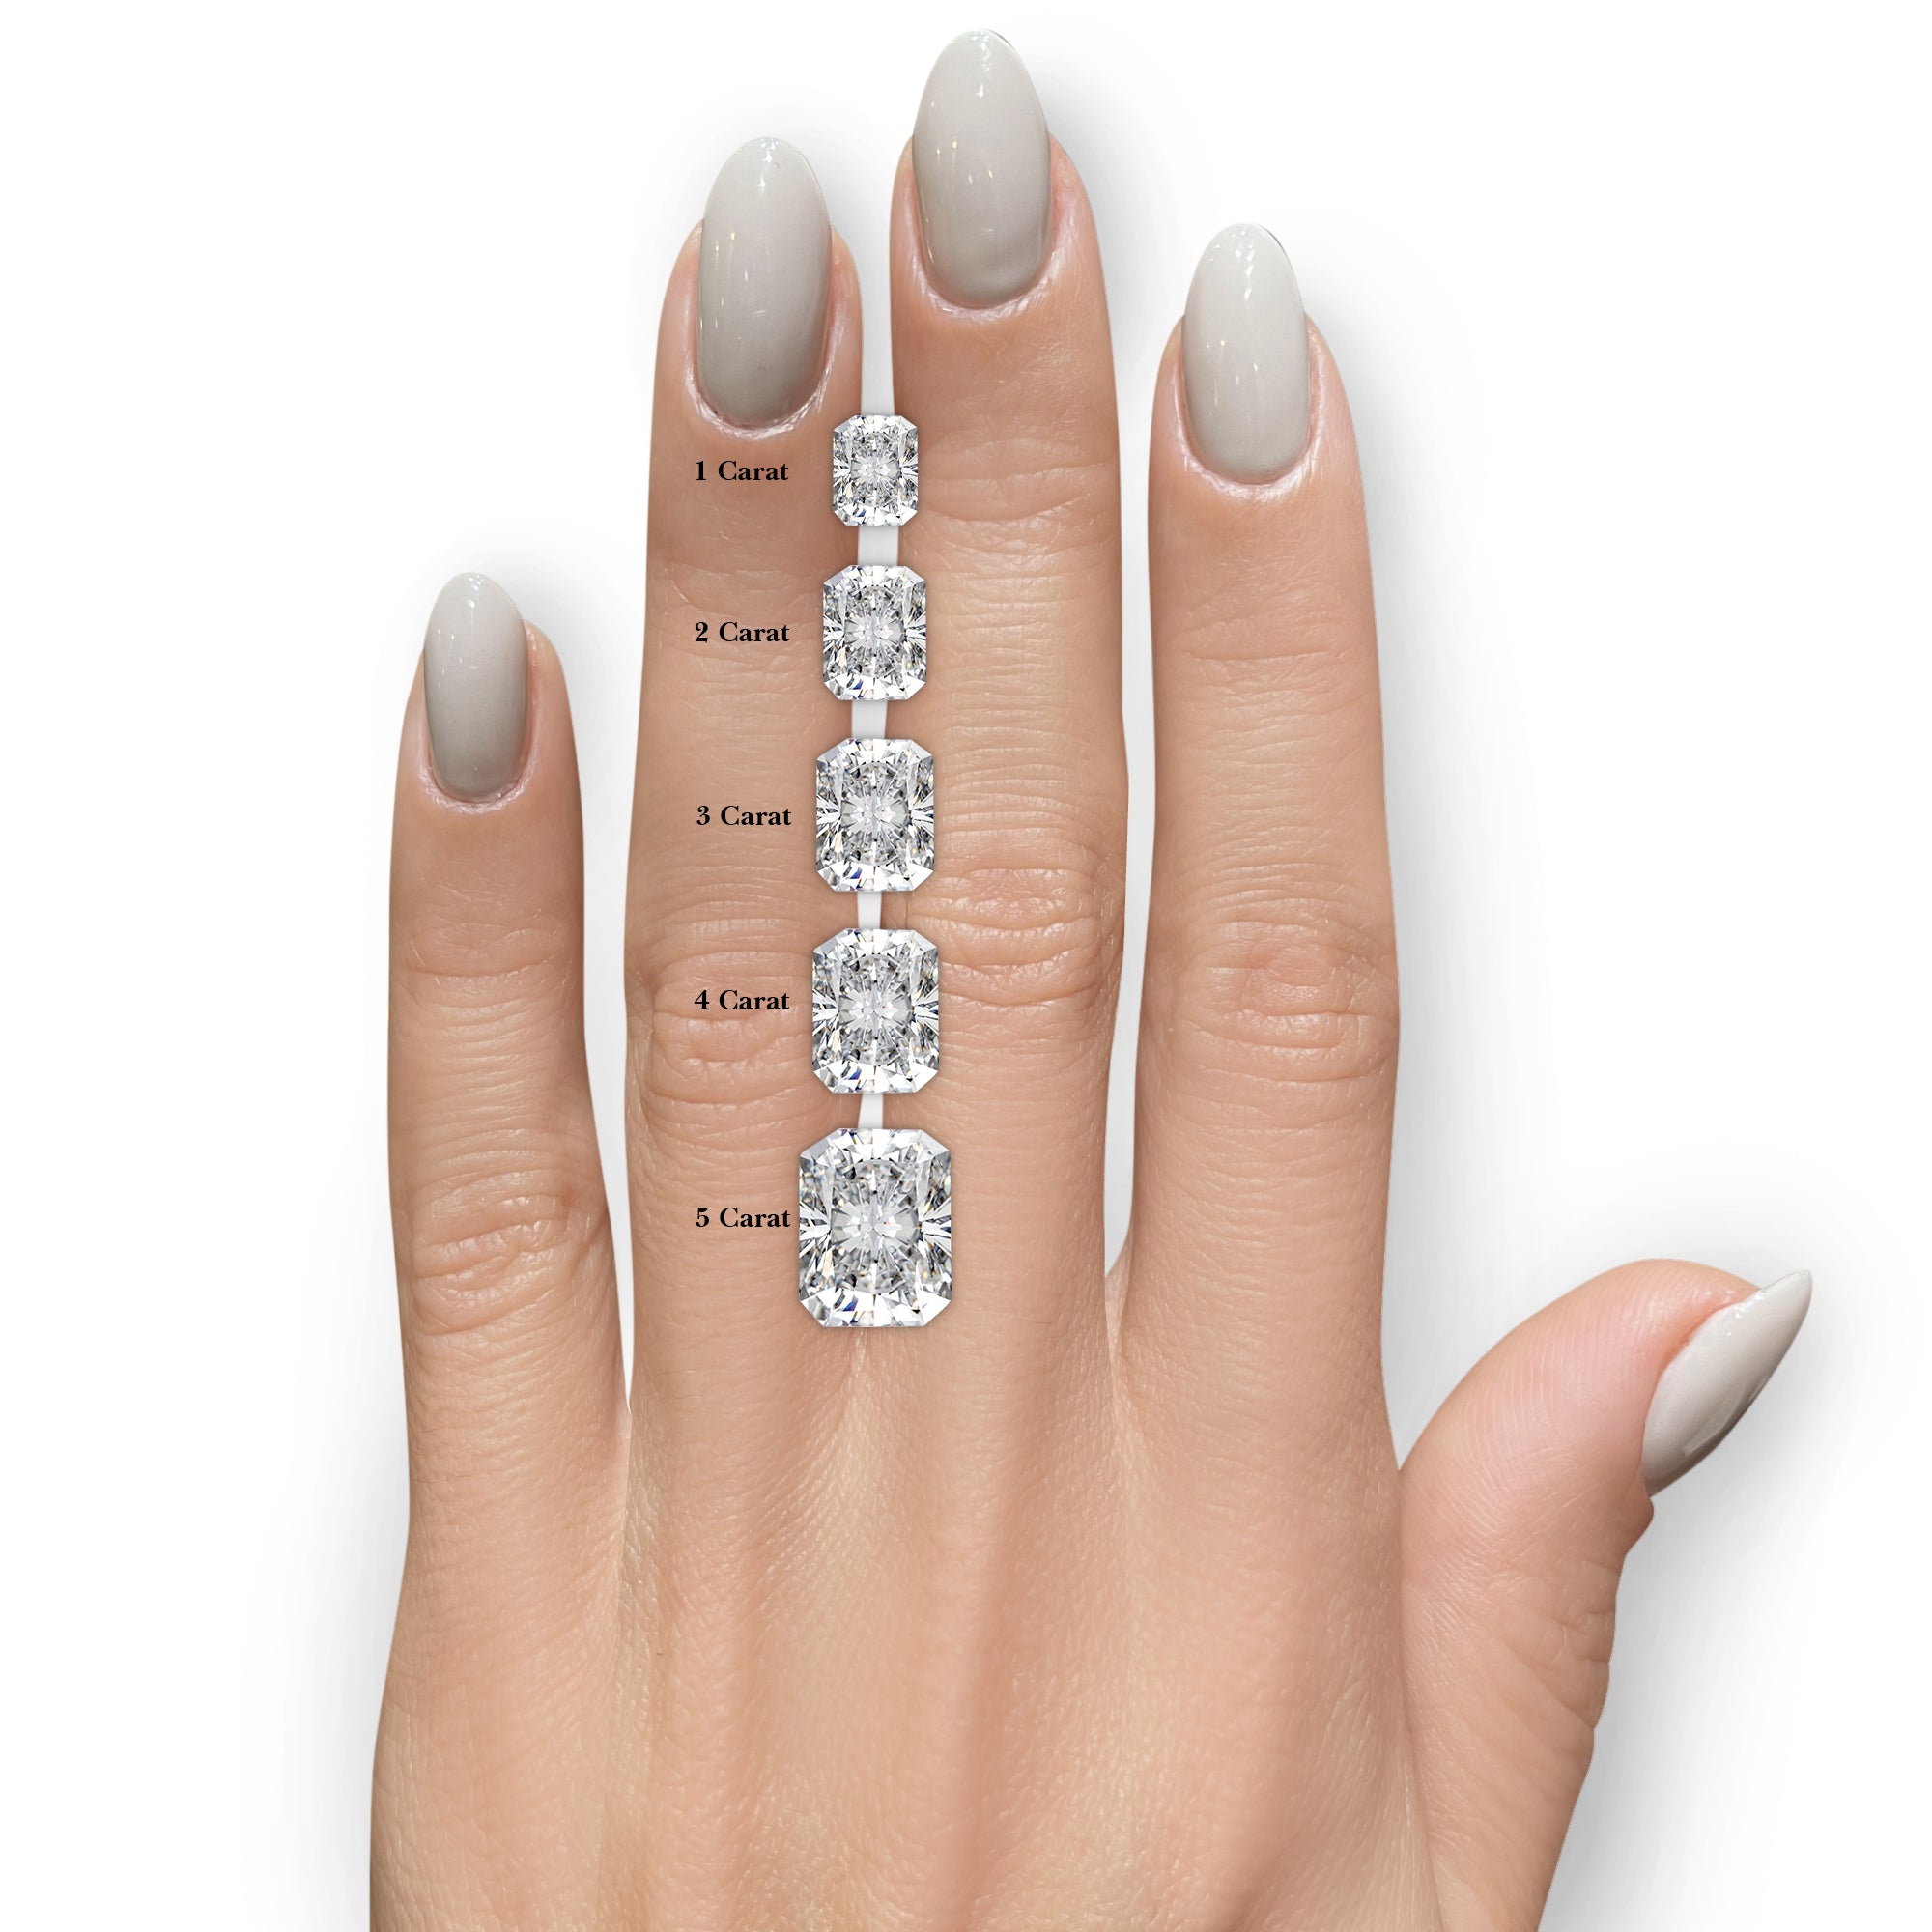 Luna Diamond Engagement Ring -Platinum